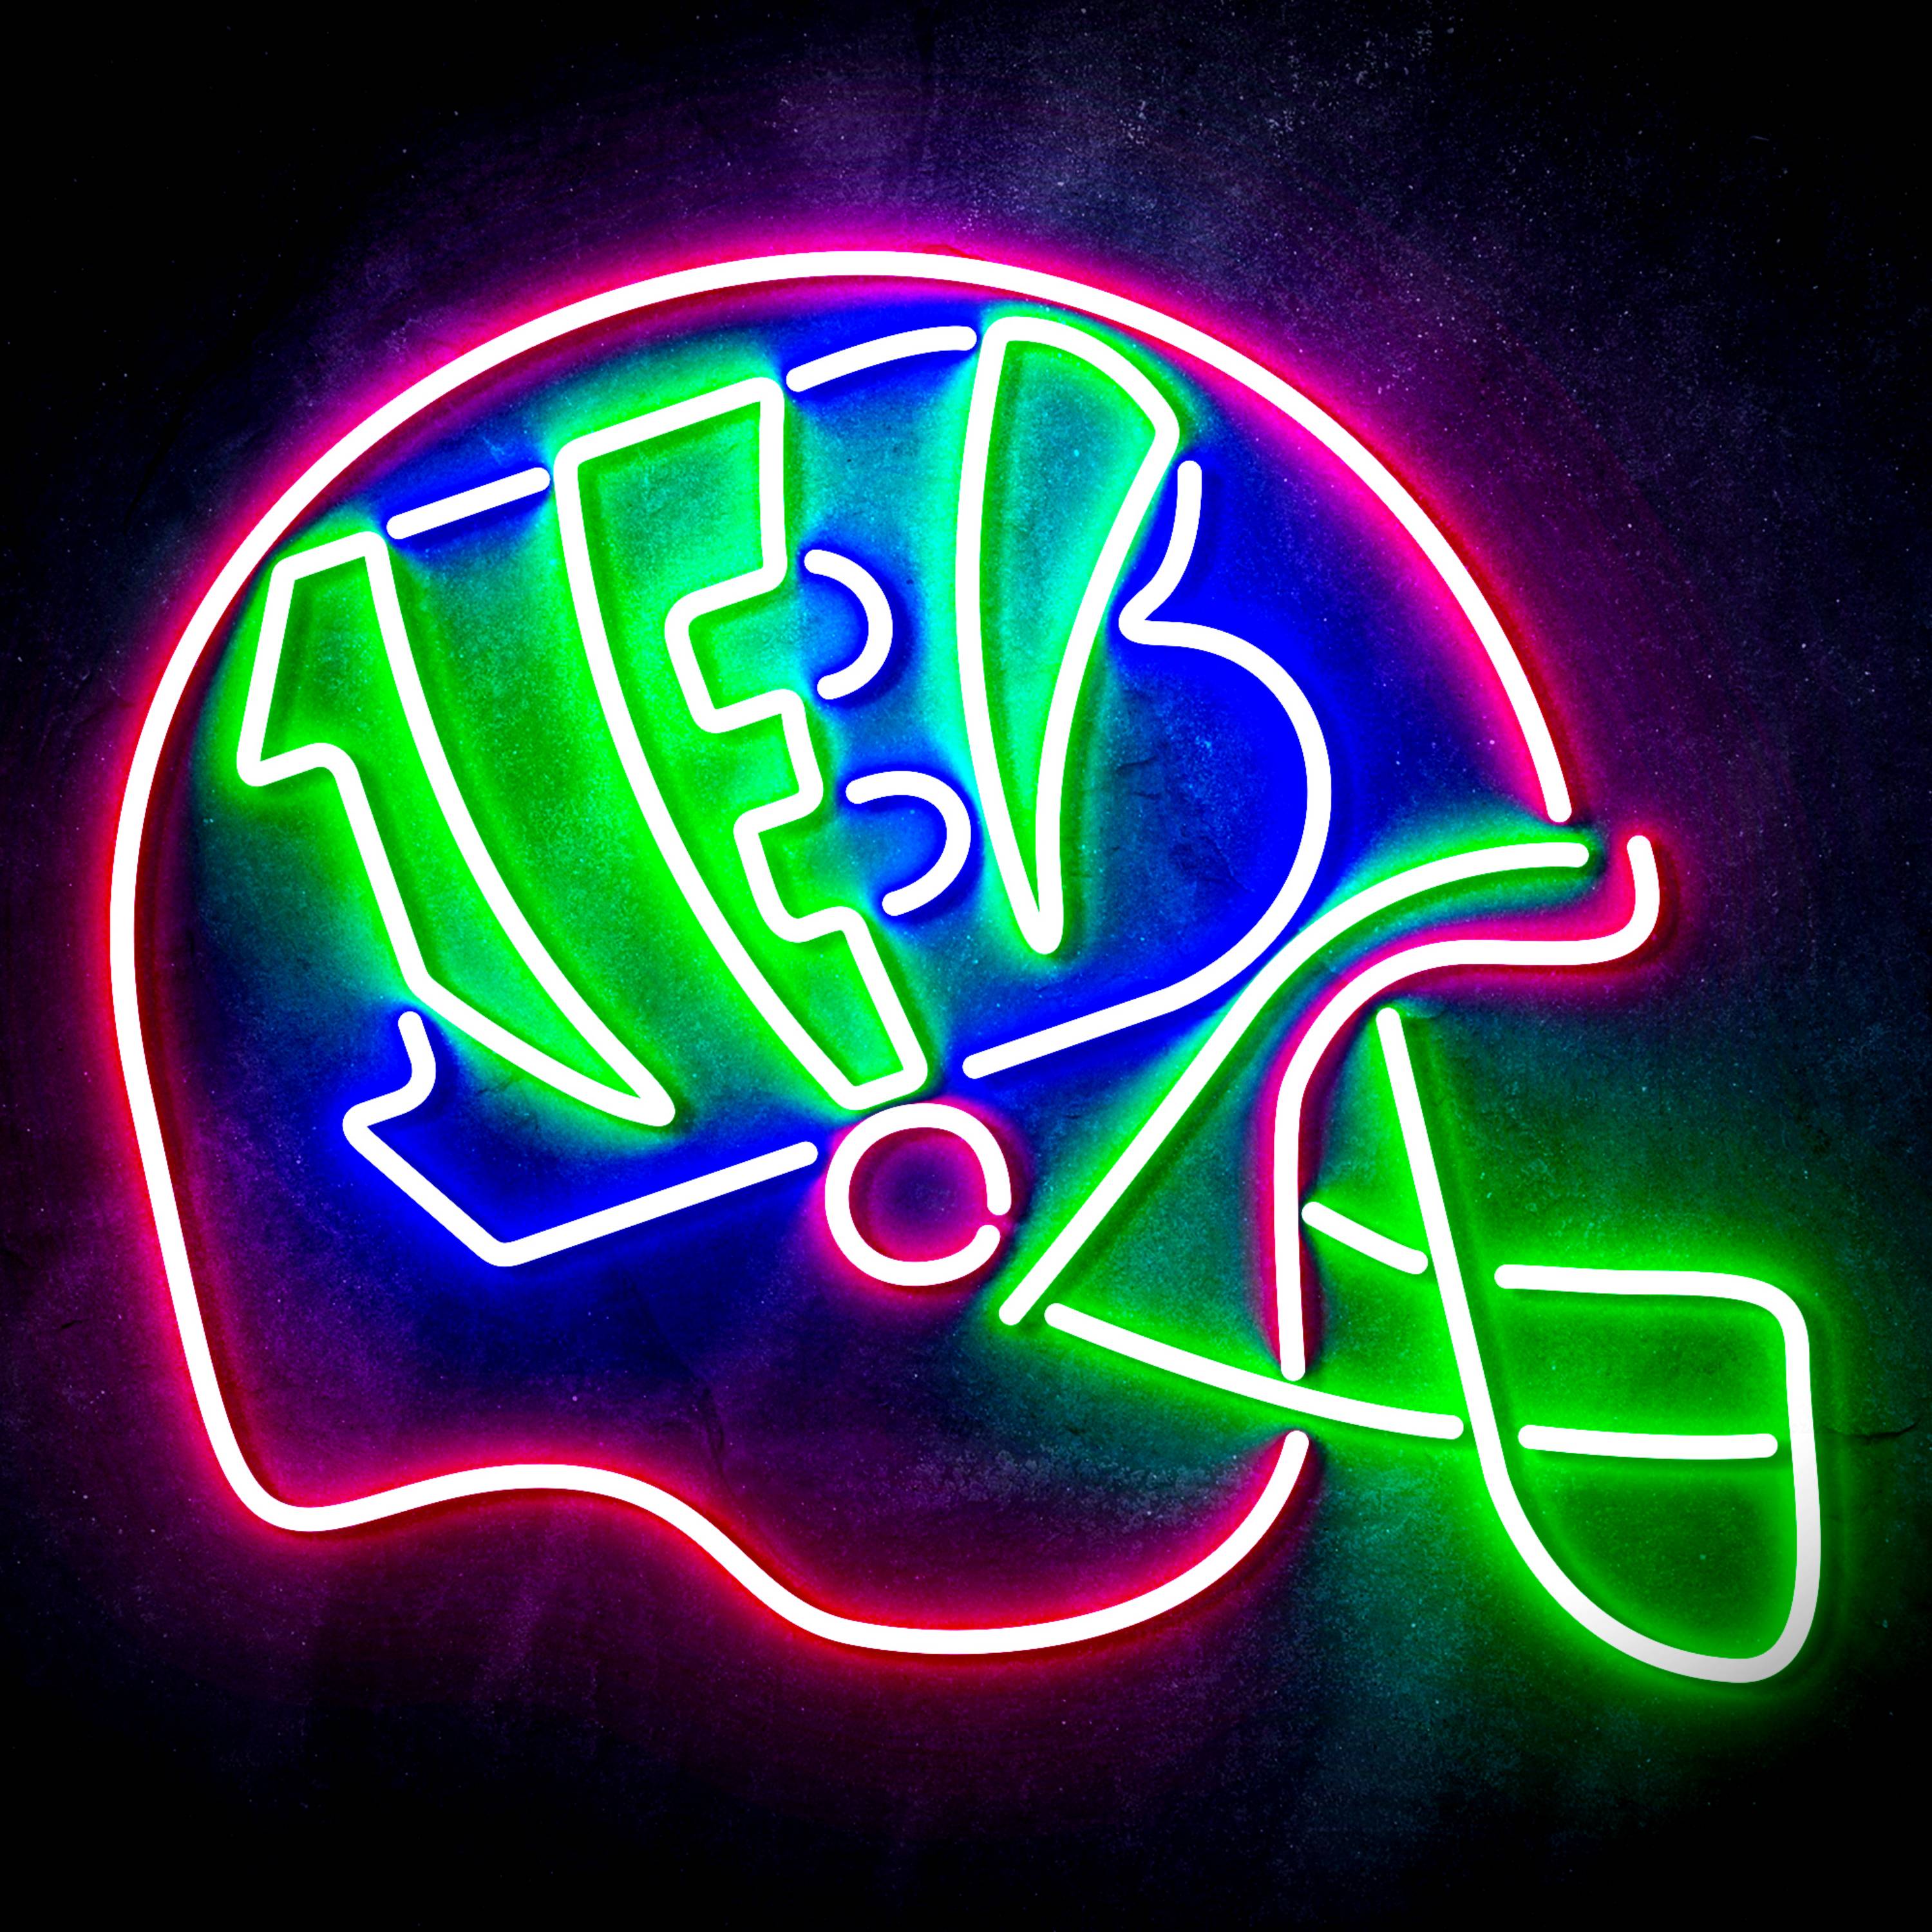 NFL Helmet Cincinnati Bengals LED Neon Sign